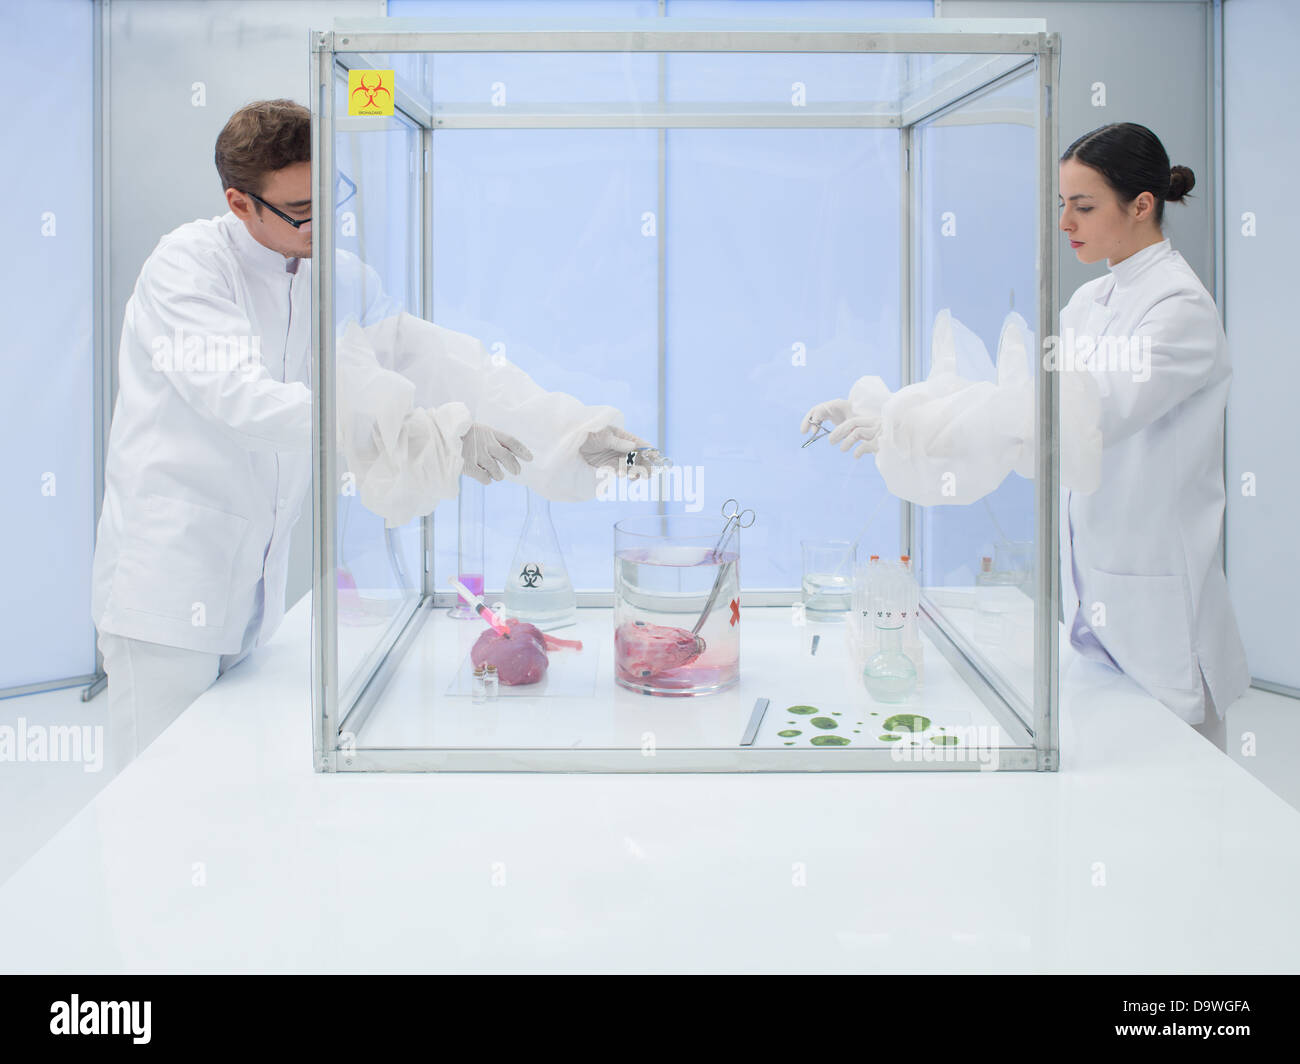 Prüfung einer Fleisch-Probe in einer Sterilität Kammer arbeiten als Team mit dem Mann hält das Fleisch während seiner wo Laboranten Stockfoto